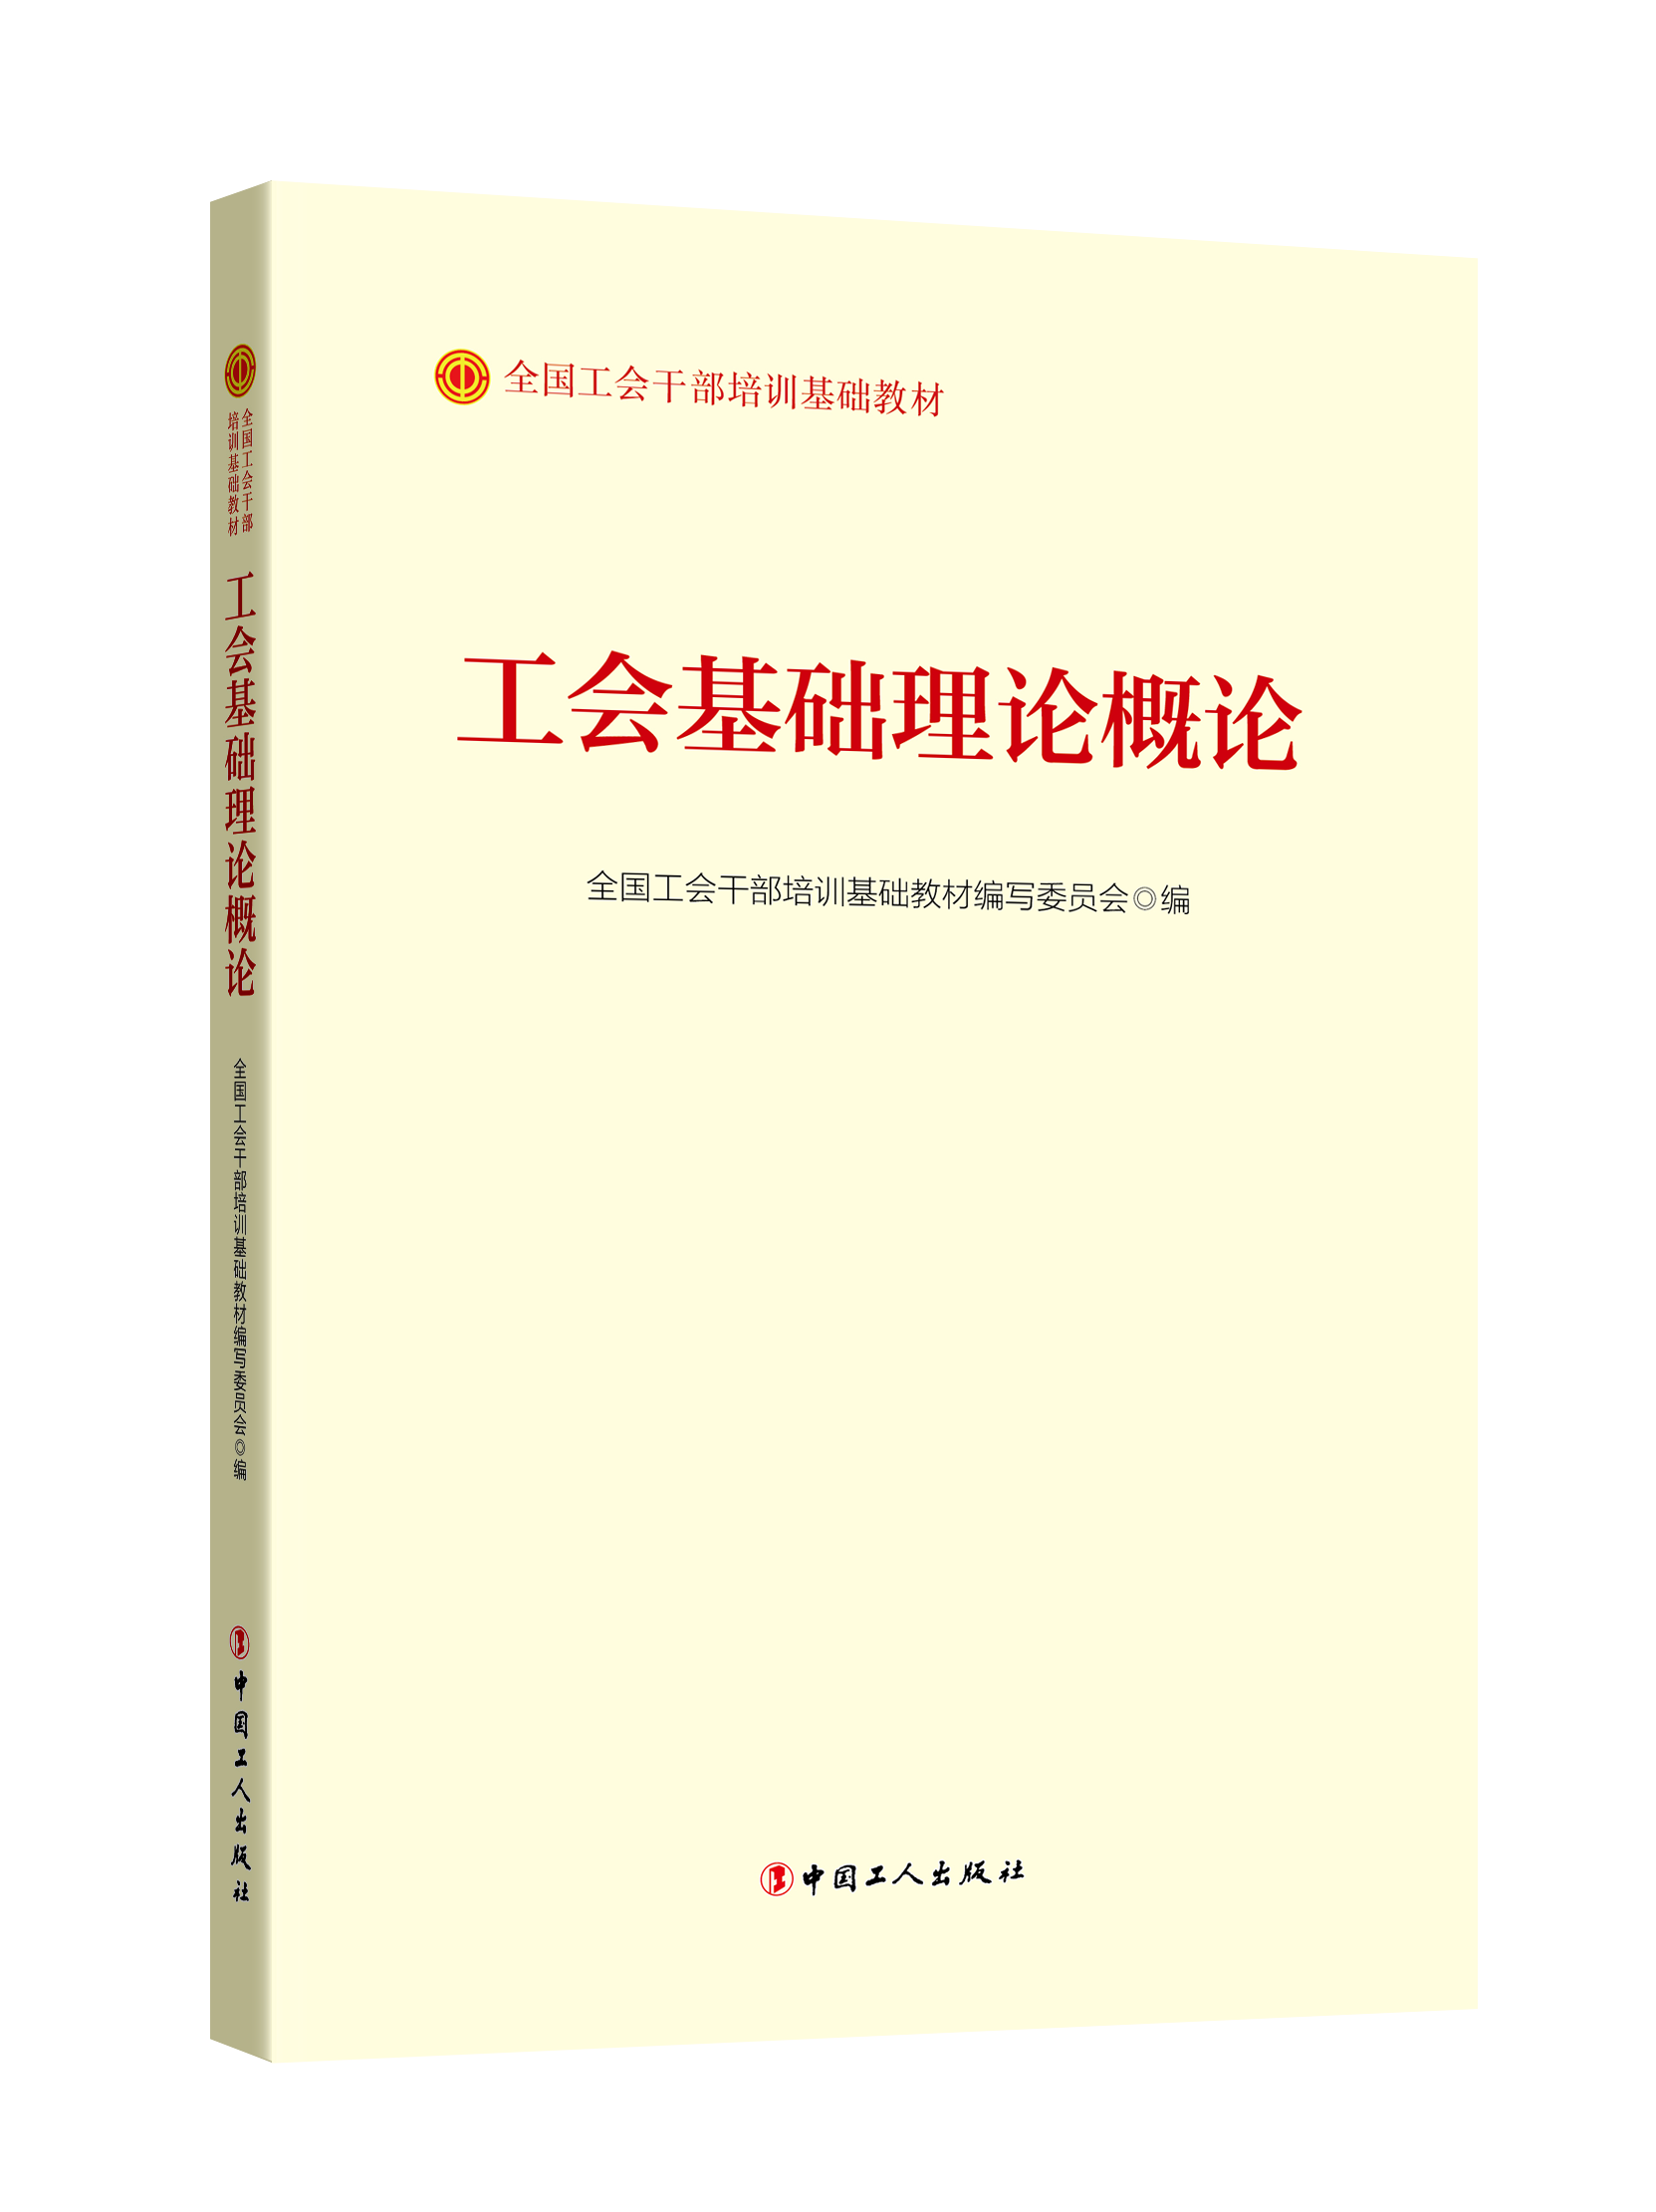 正版2023新书 工会基础理论概论   全国工会干部培训基础教材  中国工人出版社 9787500881018